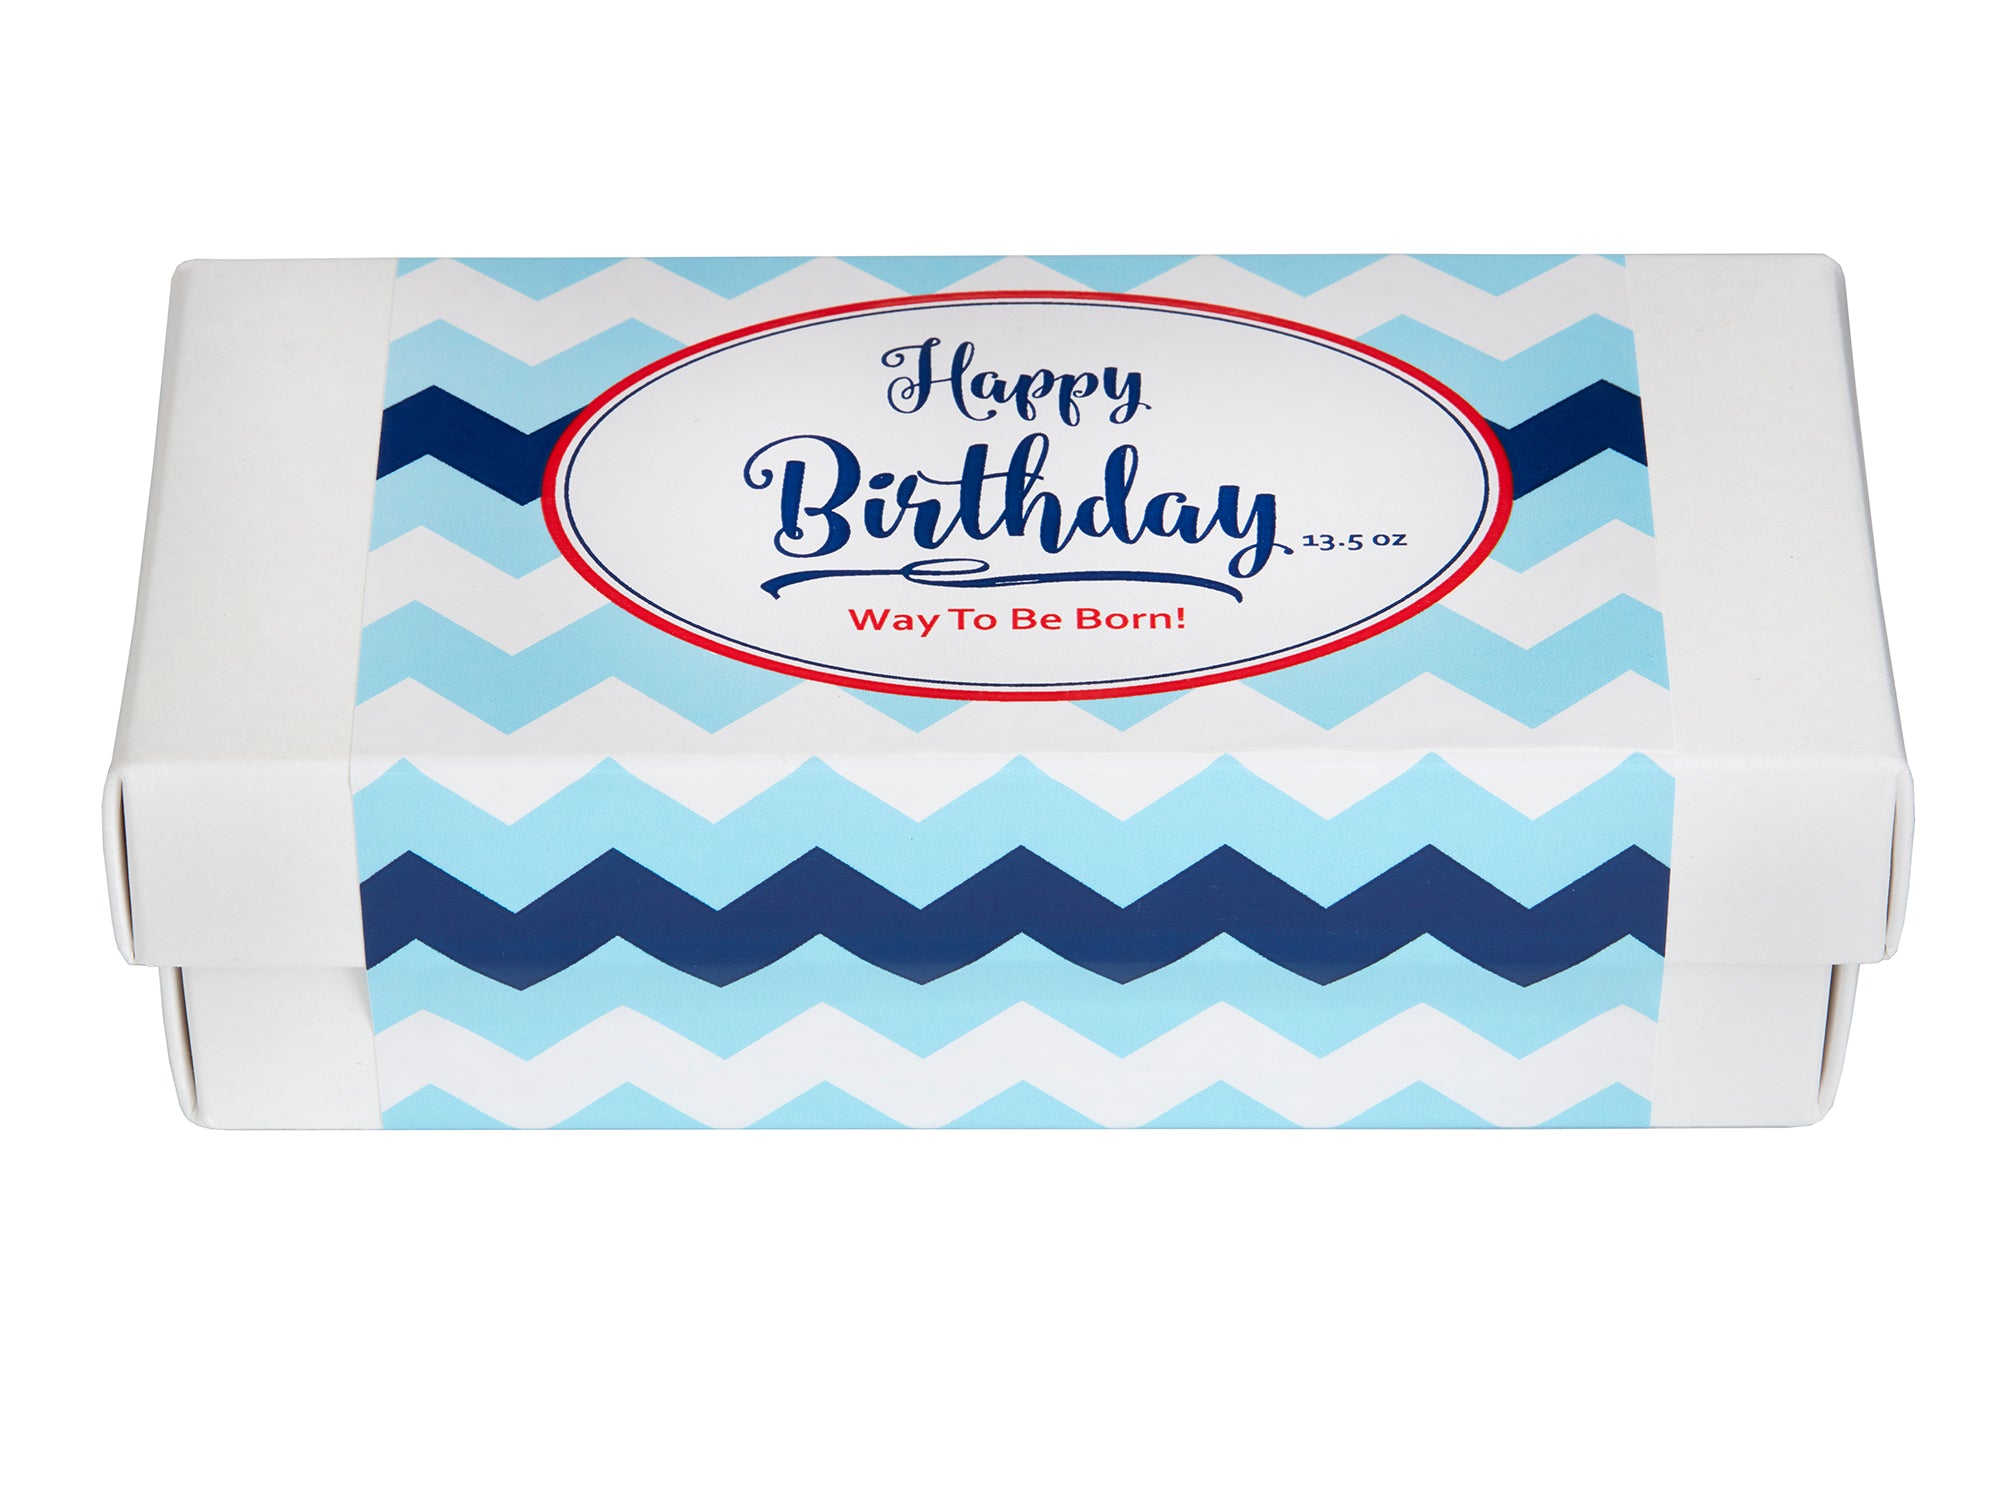 Happy Birthday (Way To Be Born!) Three Pack Gift Box